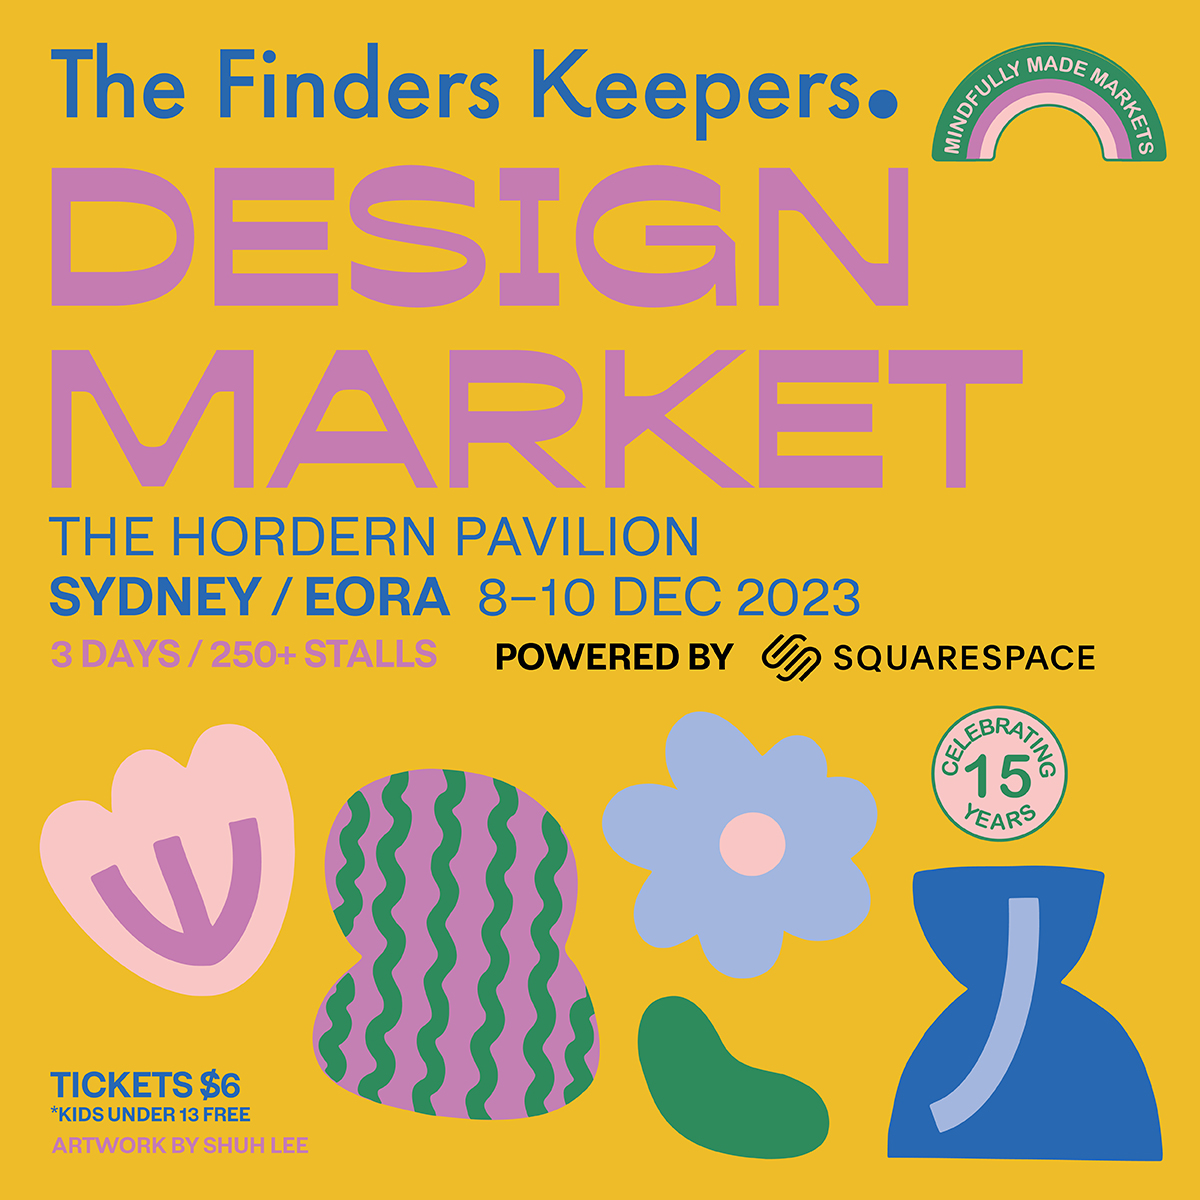 Sydney/Eora SS23 Market Lineup